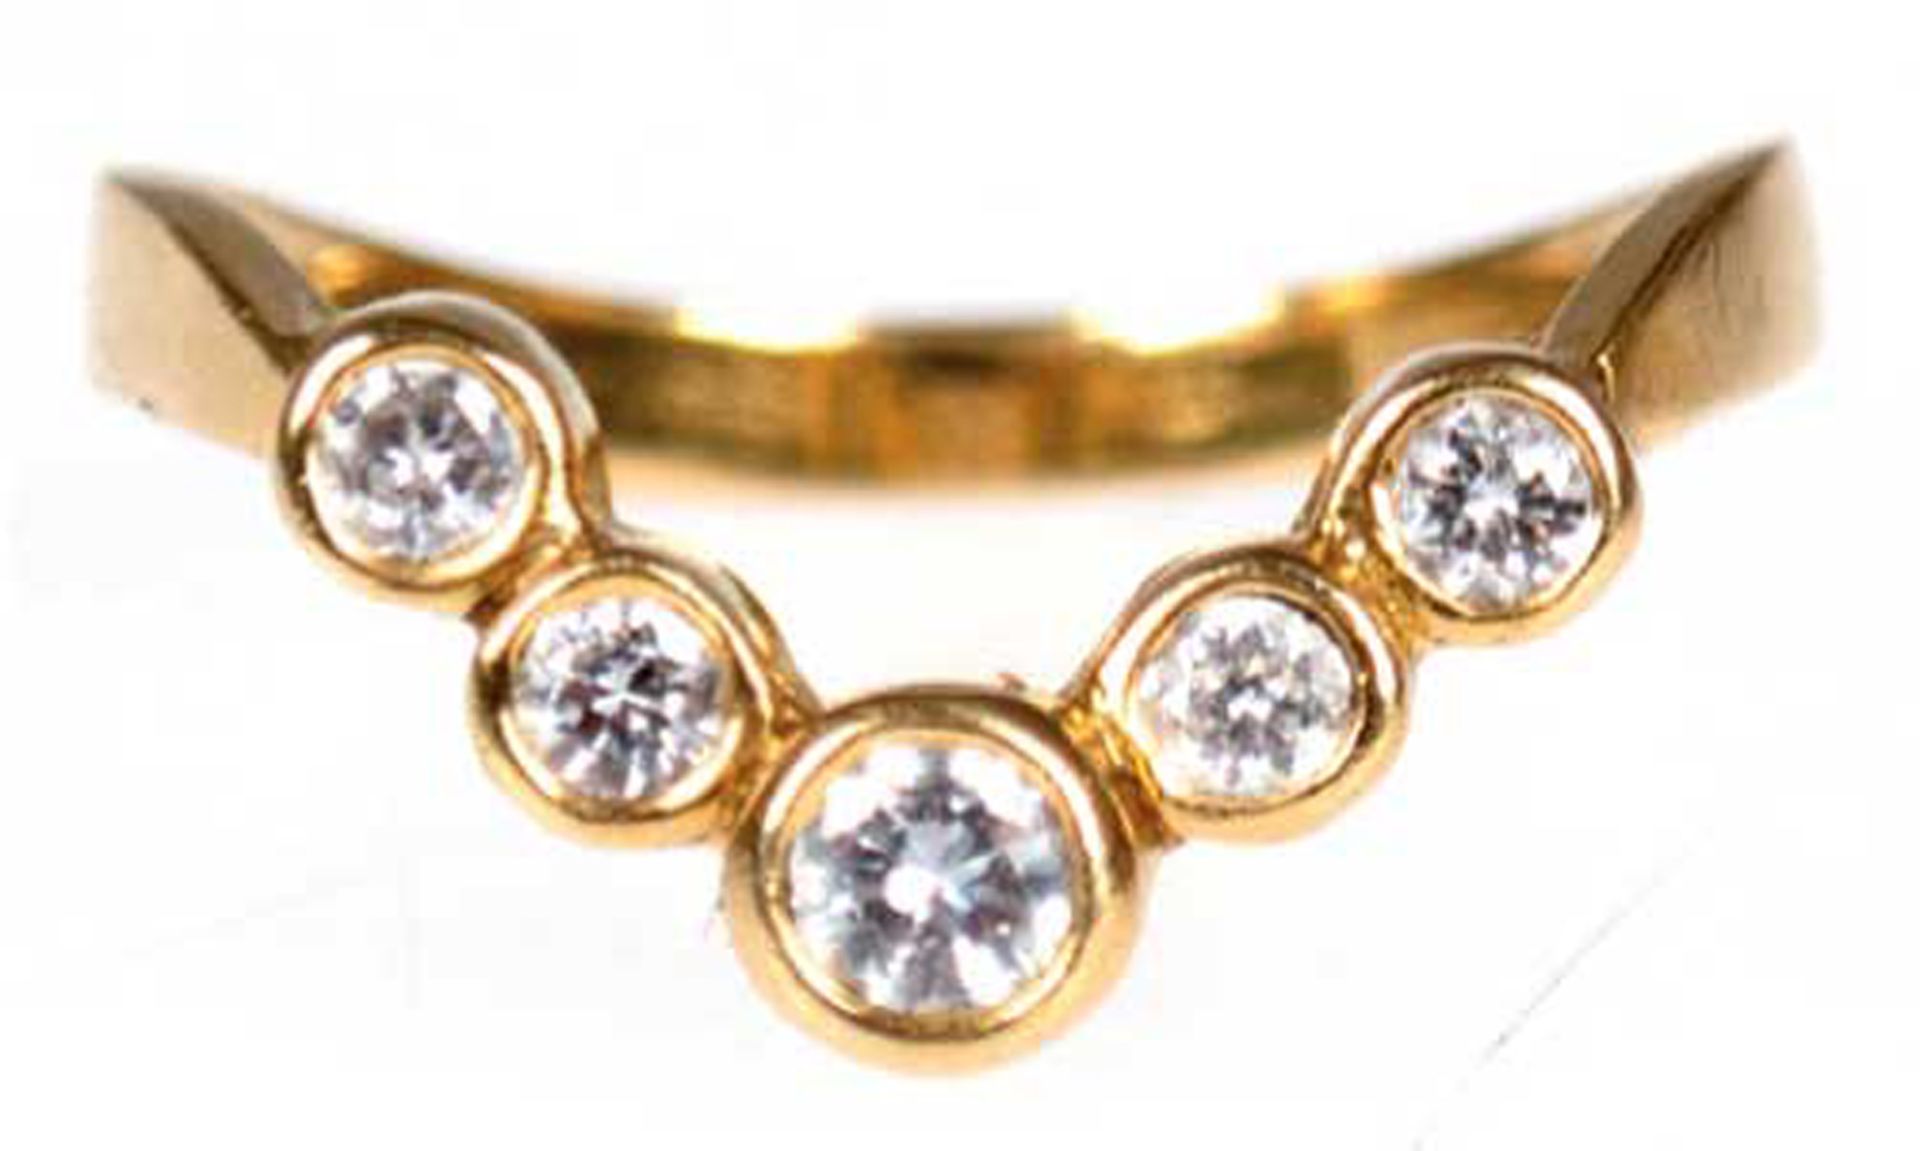 Brillant-Ring, 750er GG, keilförmig gestalteter Ringkopf besetzt mit 5 Brillanten von zus. ca. 0,32